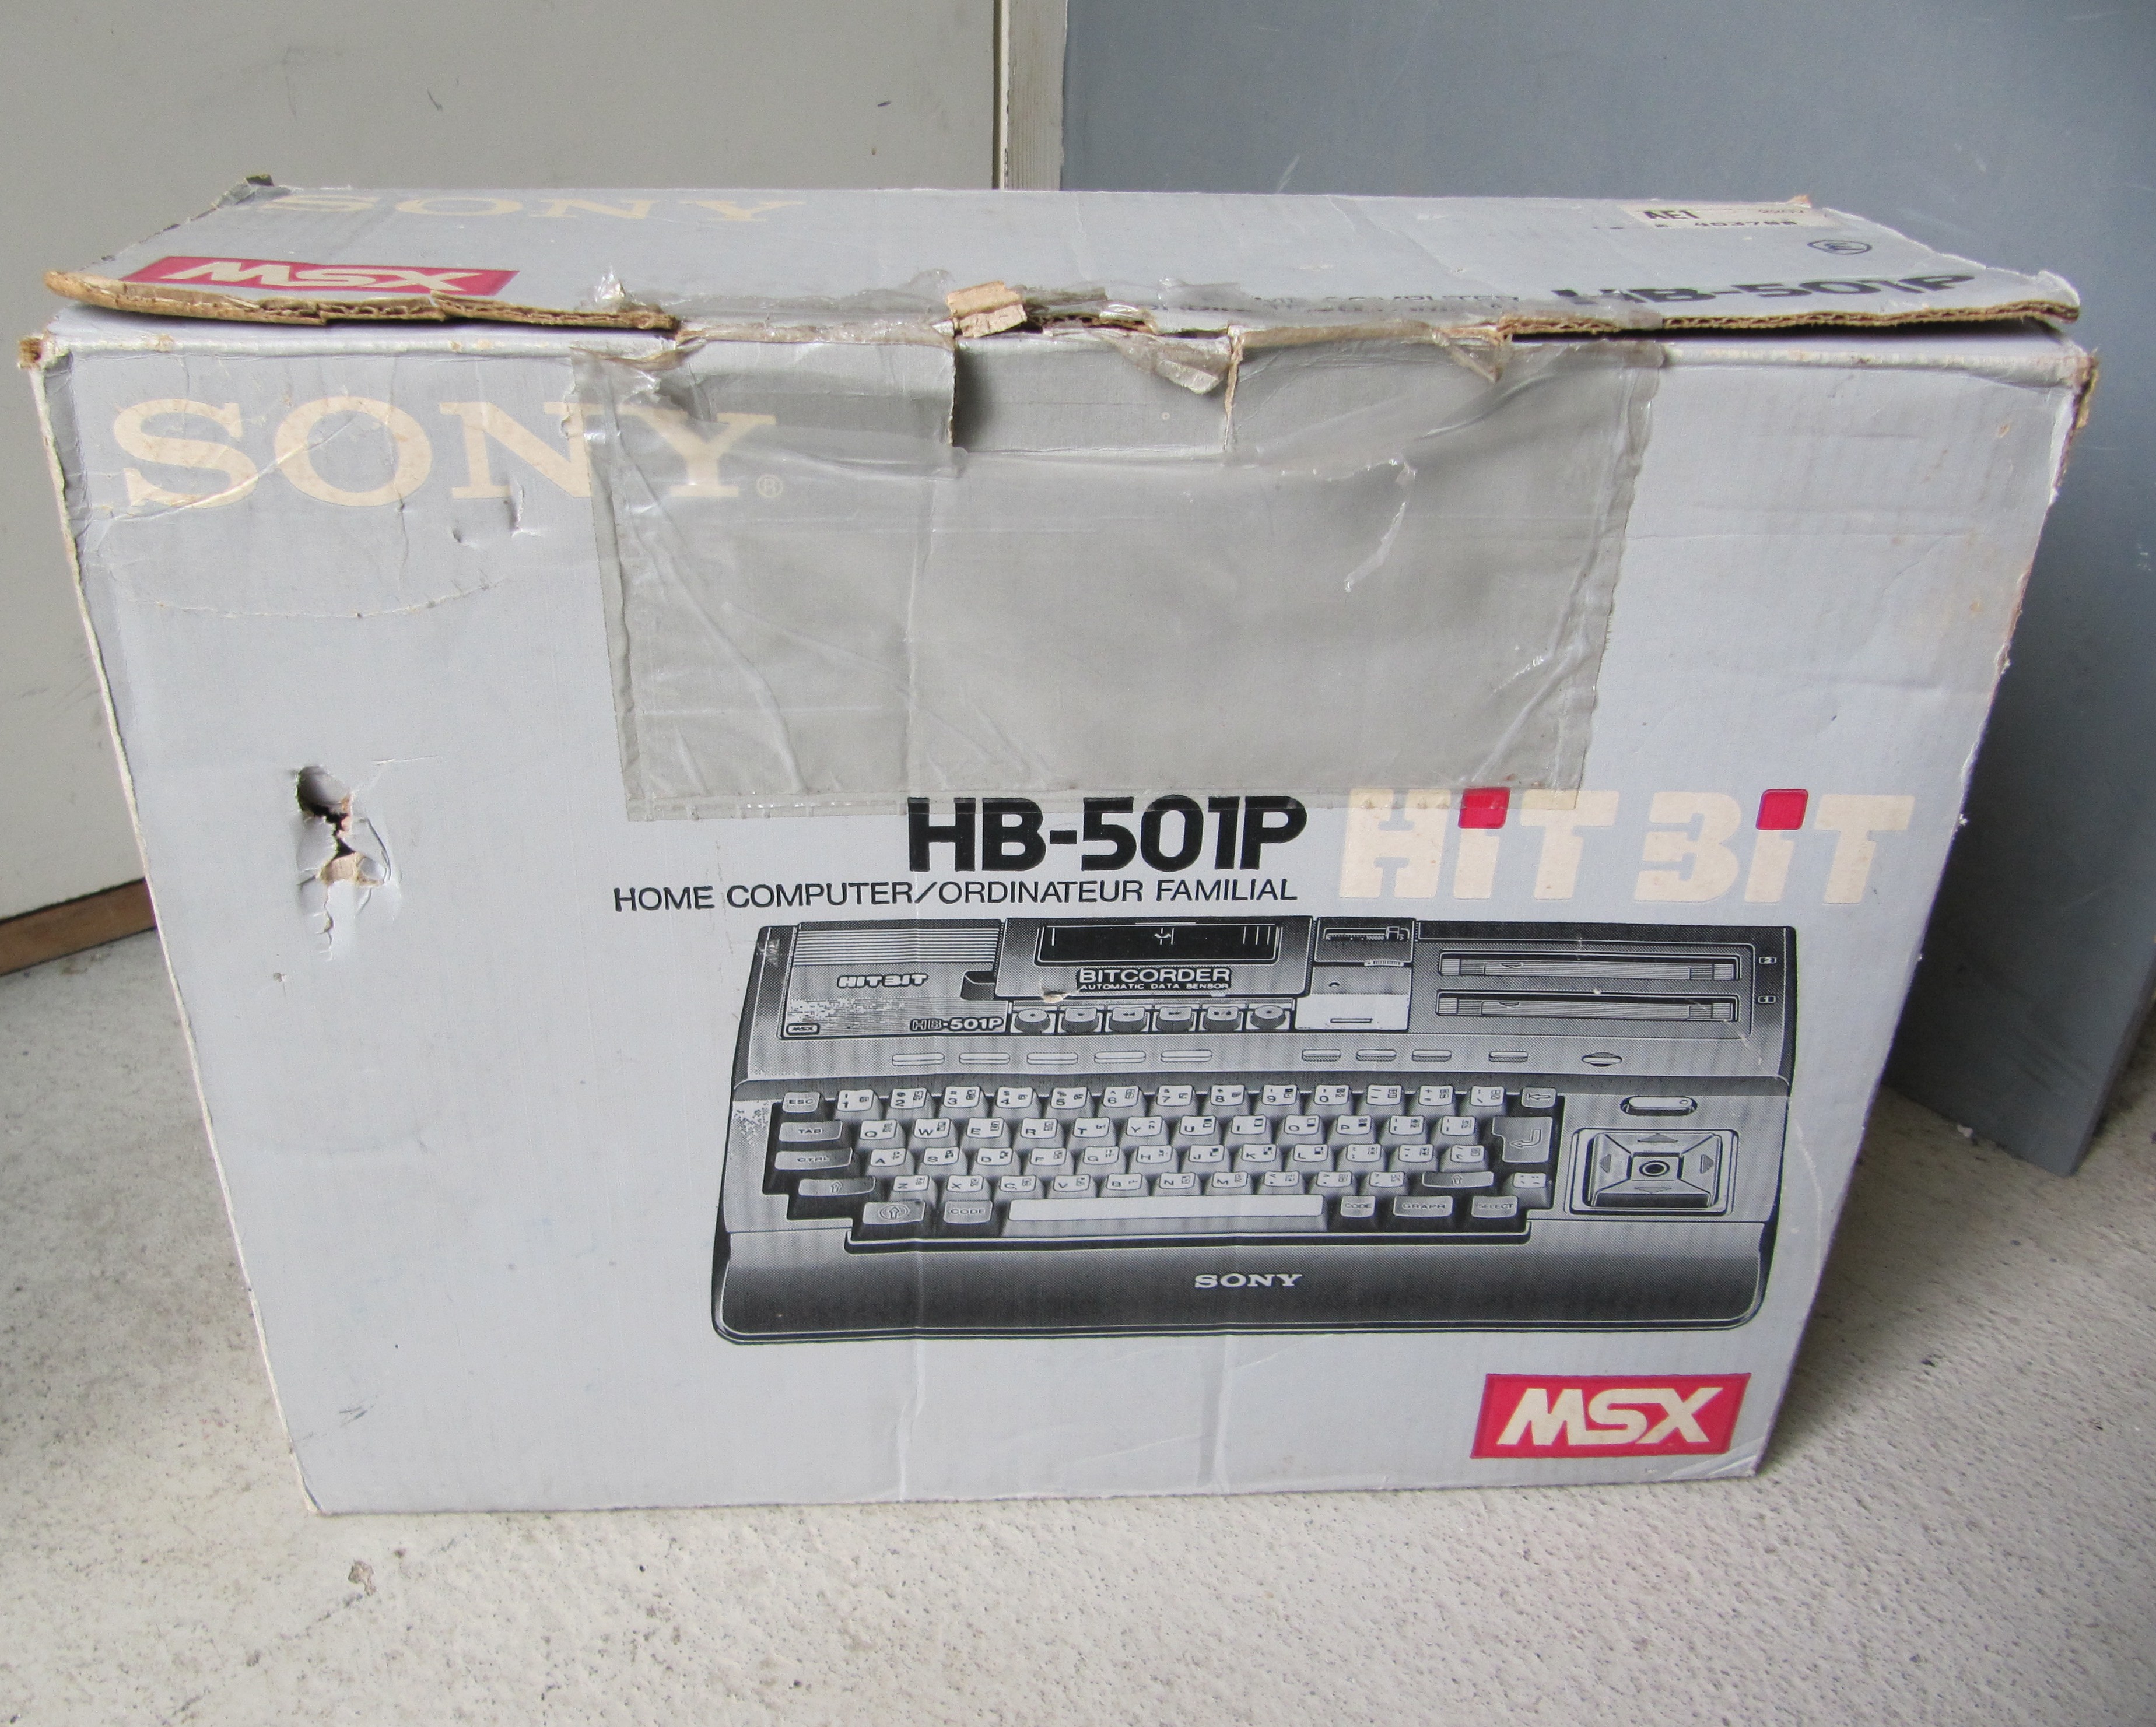 Sony - HB-501P | Media | Generation MSX